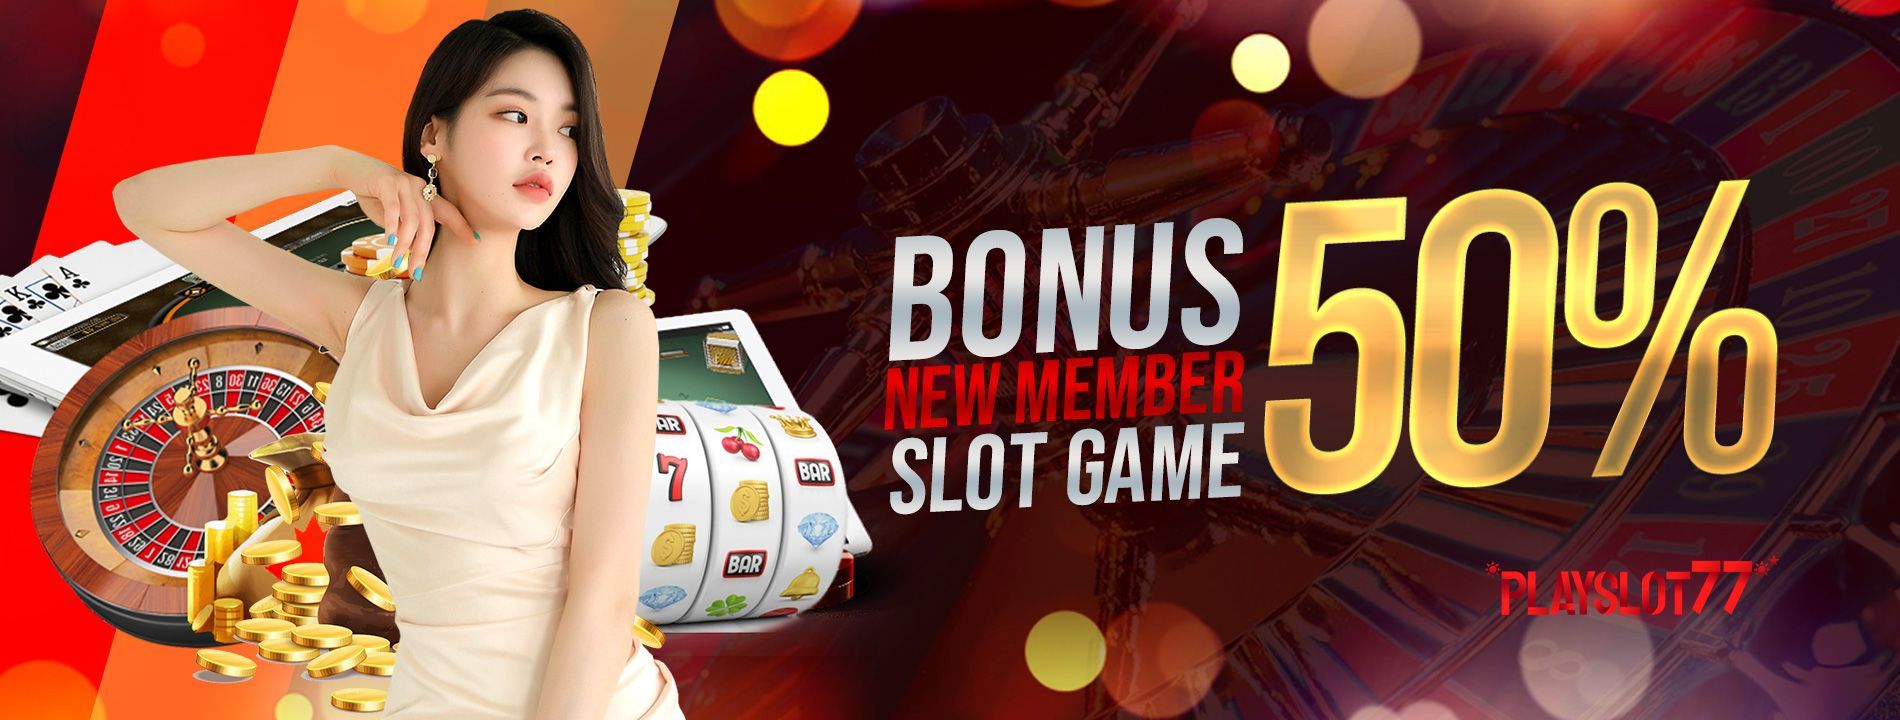 Playslot77 - Situs Judi Online Slot dan Casino Terbaik di Indonesia